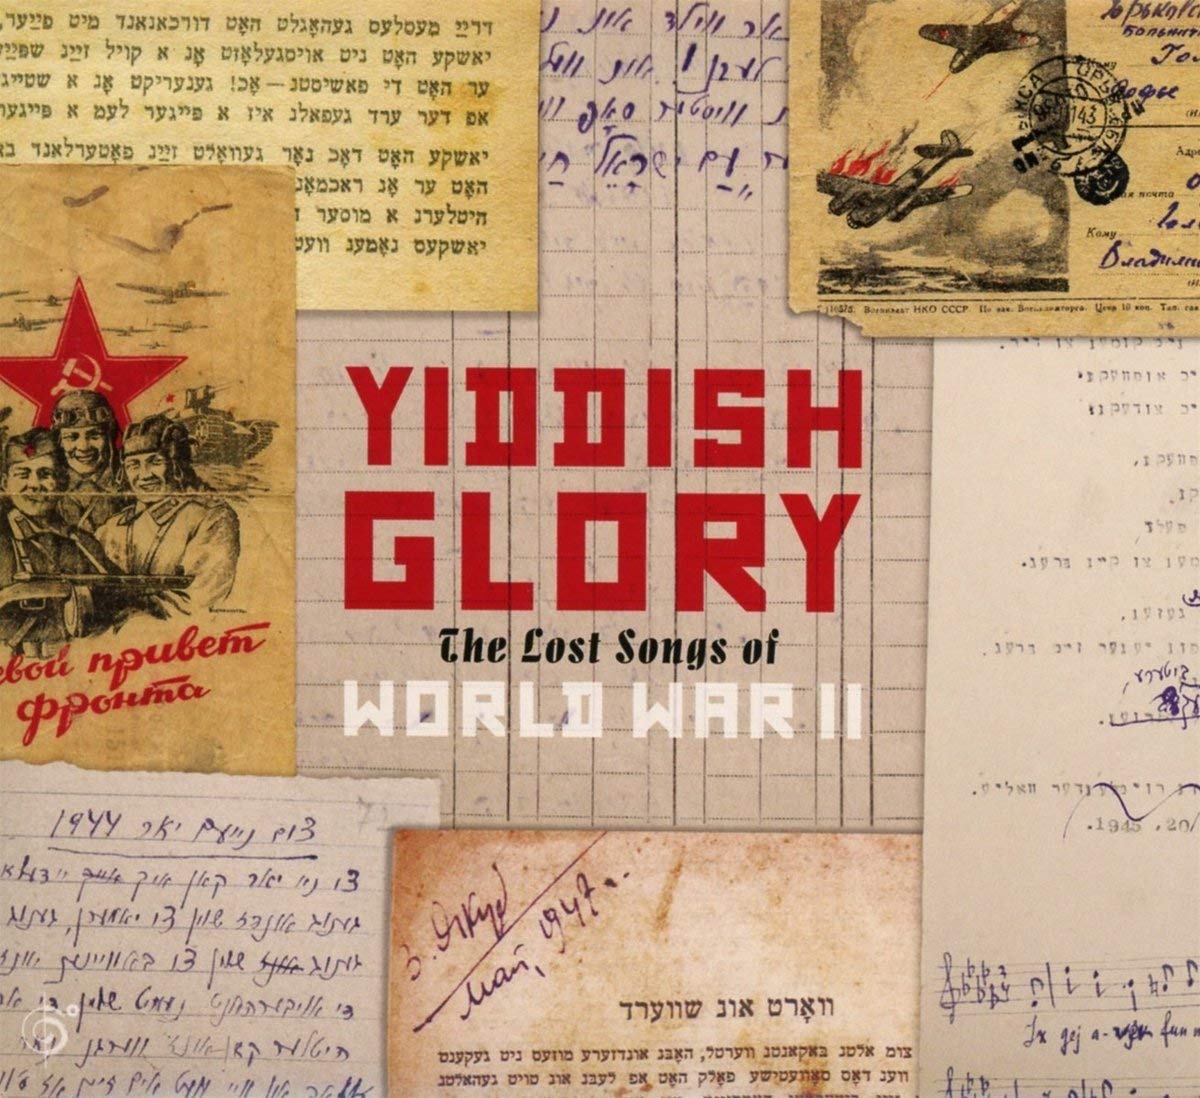 Yiddish Glory